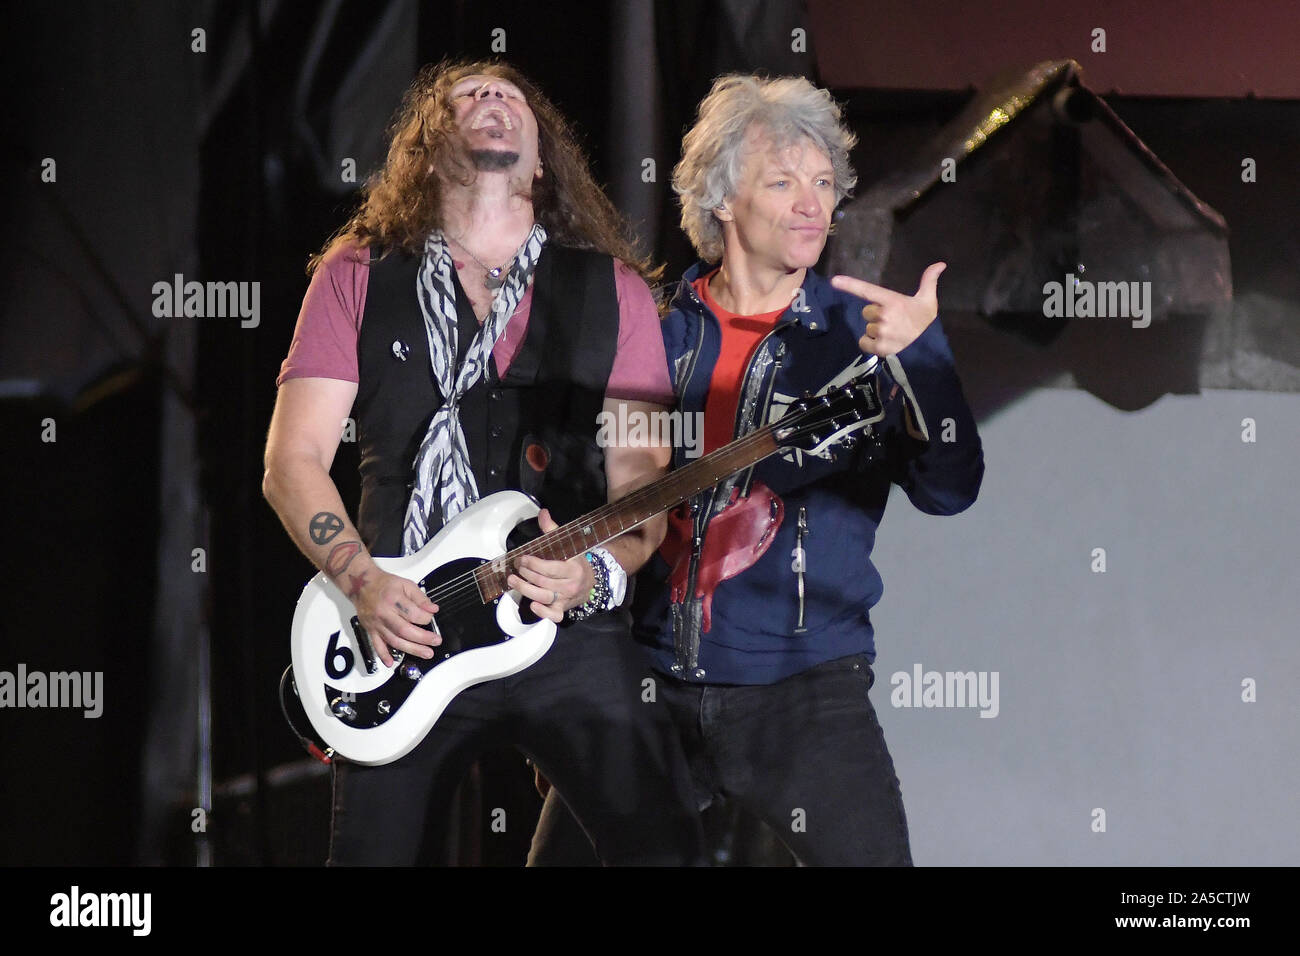 Rio de Janeiro, September 30, 2019. Singer Jon Bon Jovi and guitarist Phil X of the band Bon Jovi, during a concert at Rock in Rio 2019 in Rio de Jane Stock Photo